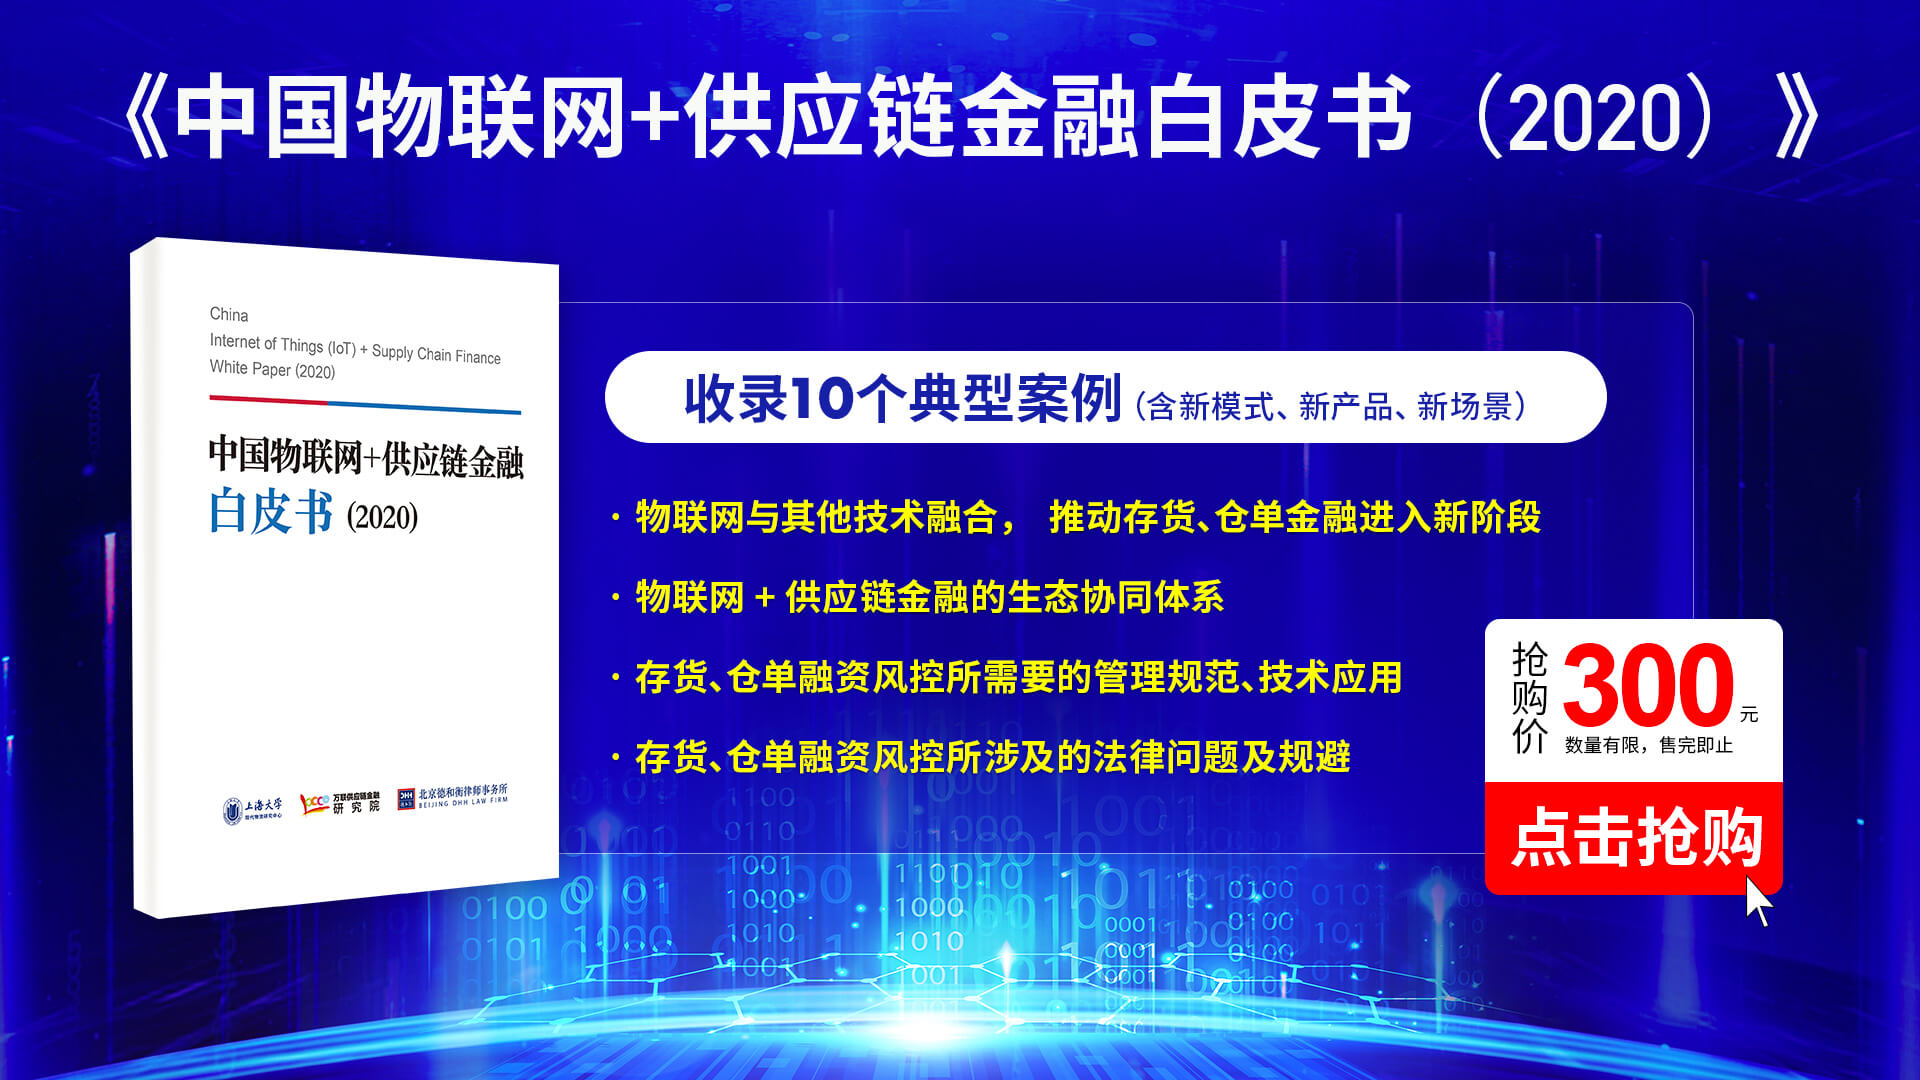 中国物联网+供应链金融白皮书（2020）